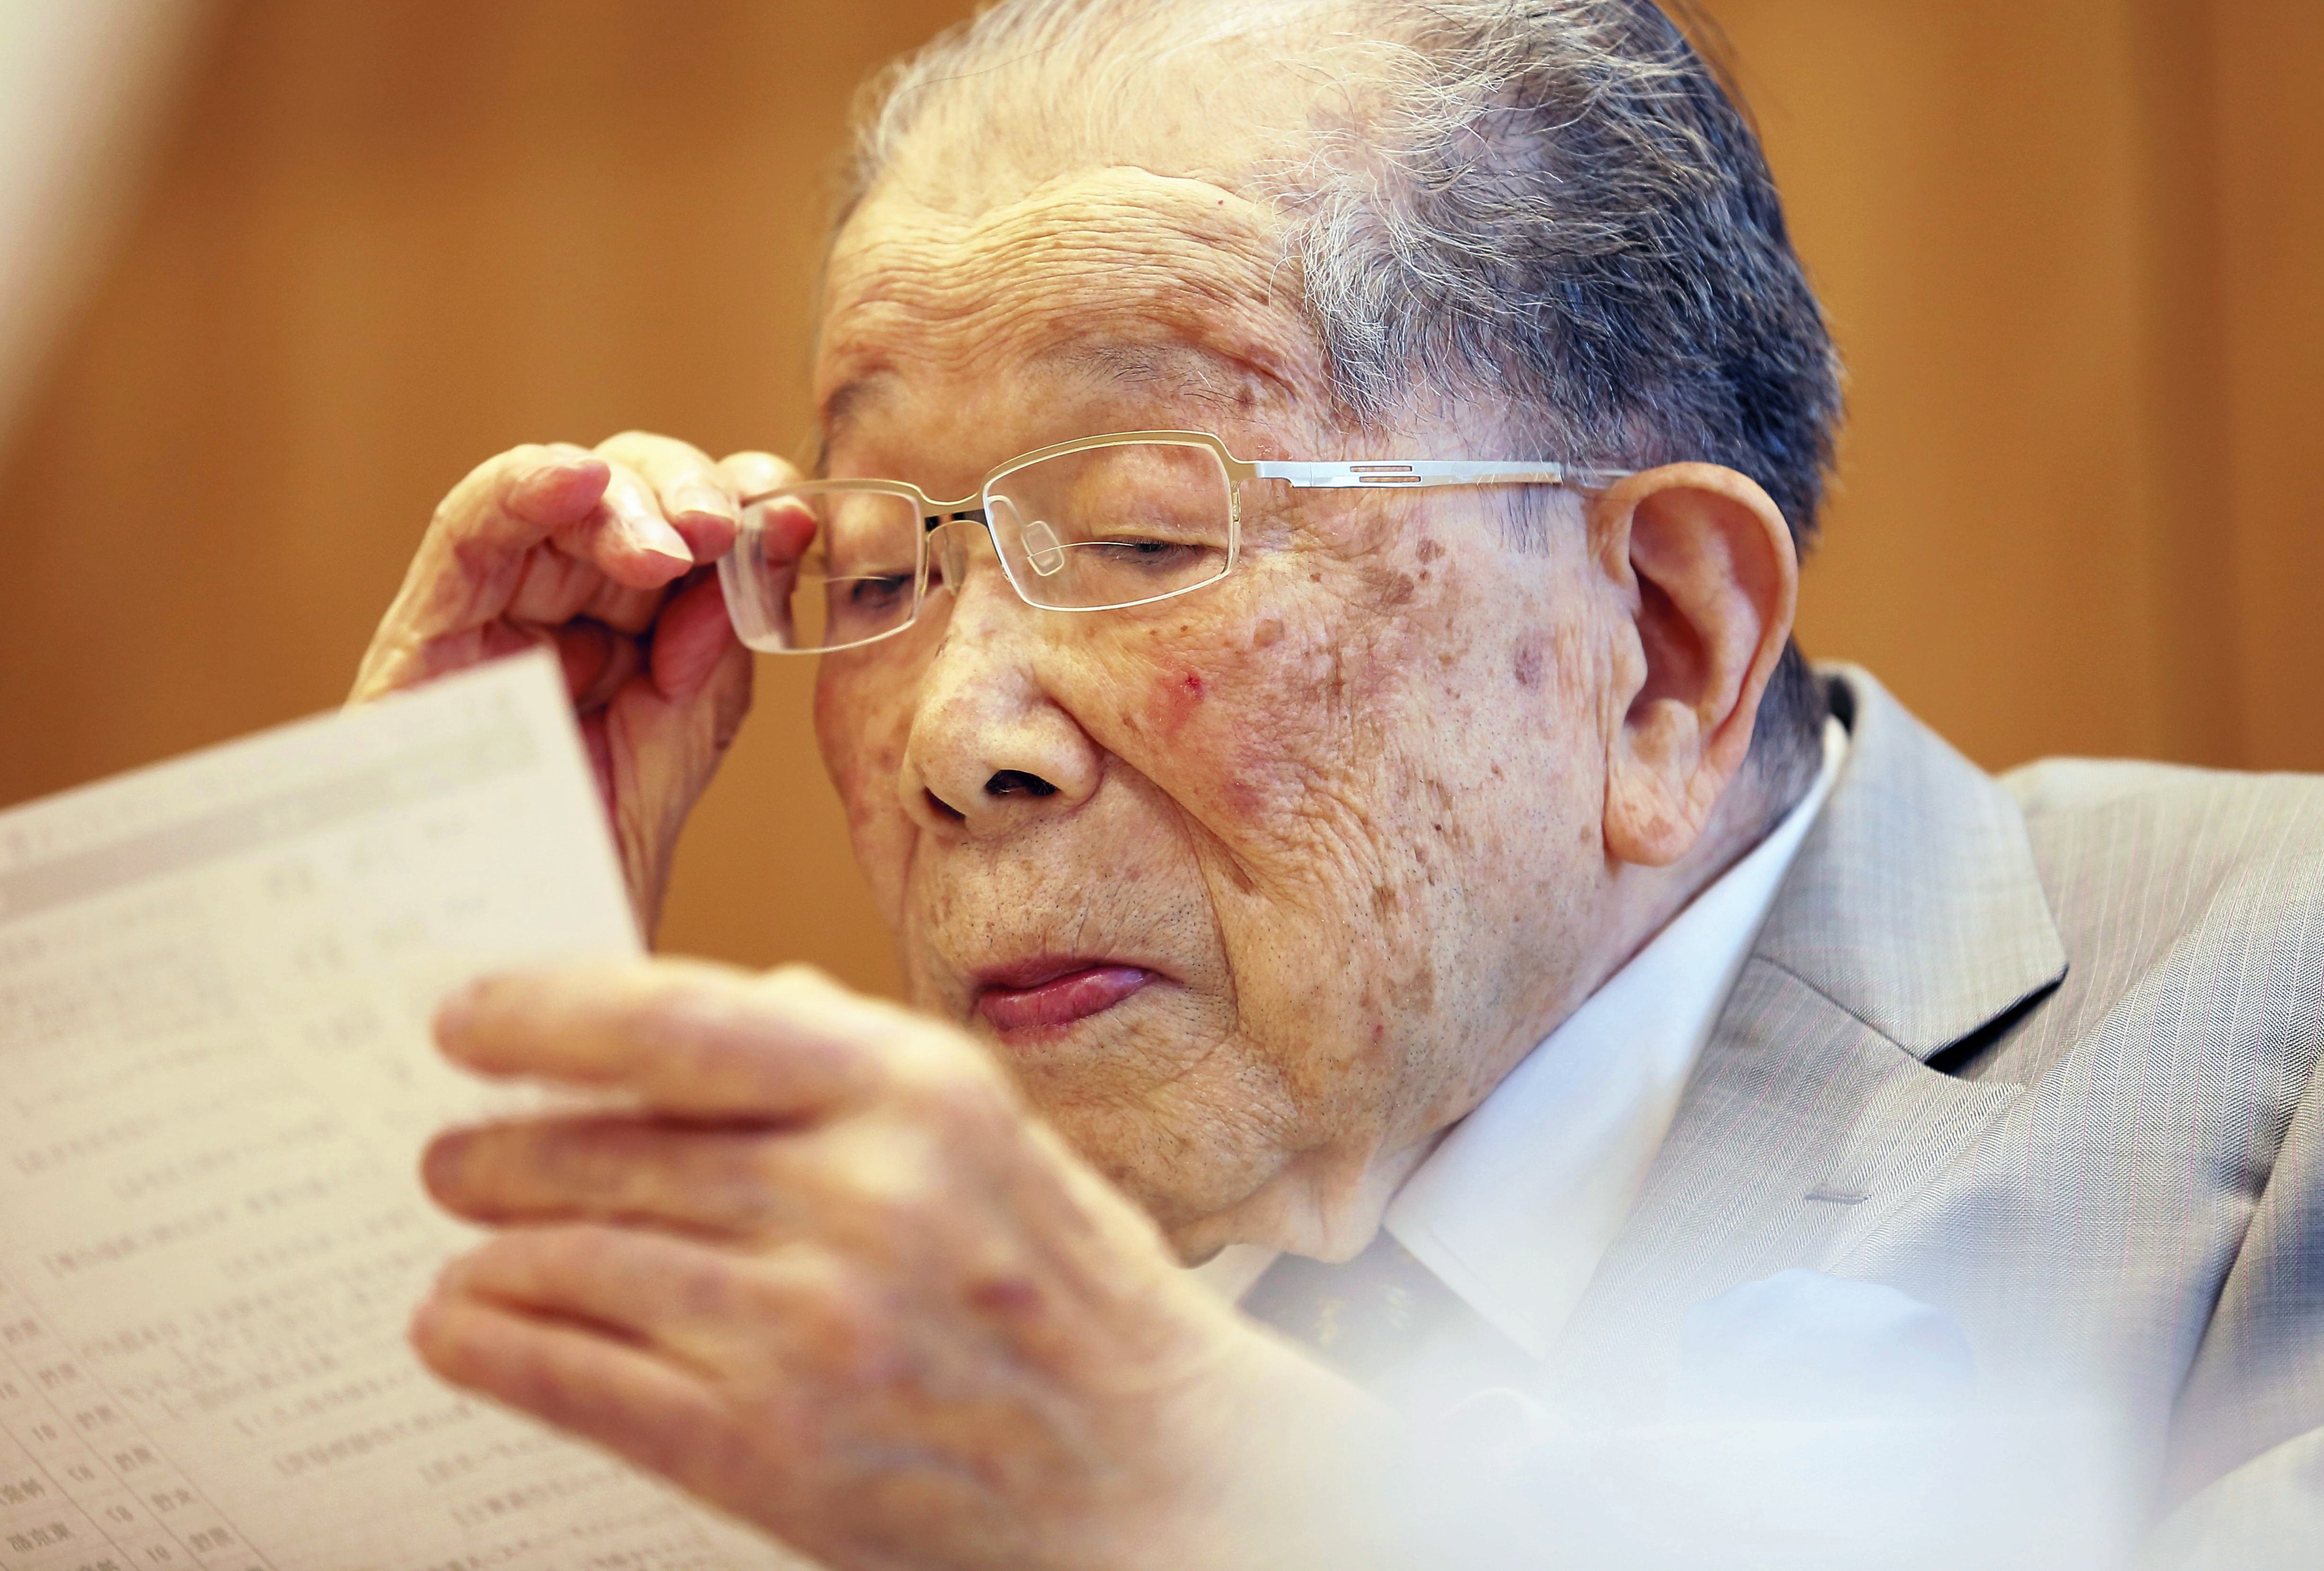 Remek tippjei vannak a 105 éves koráig élő japán hosszúélet-kutatónak, hogy hogyan élj hosszú életet